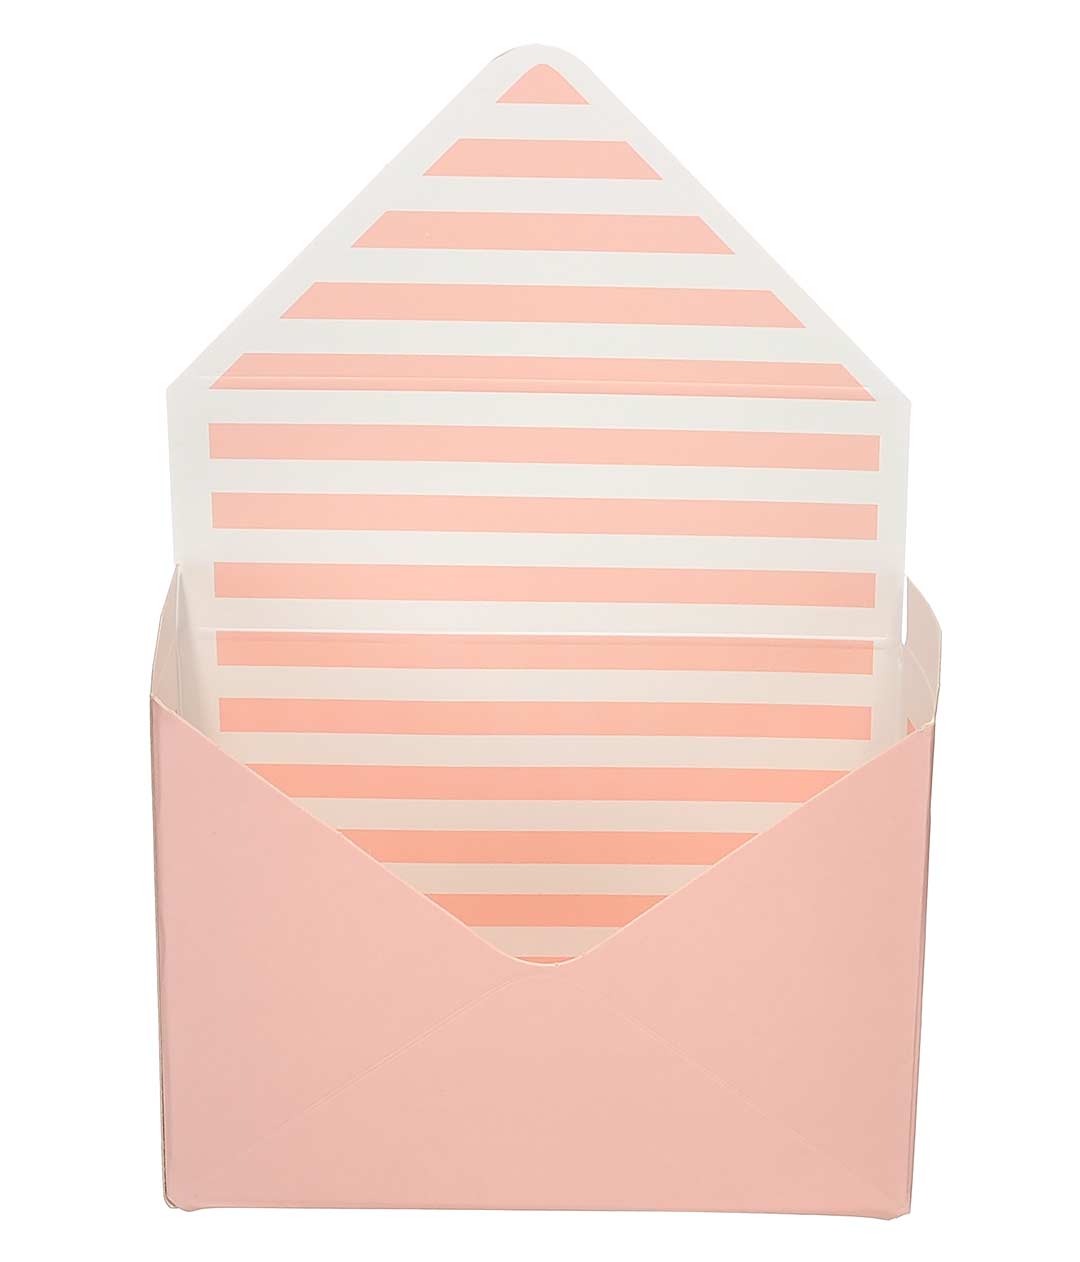 Изображение Коробка-конверт розовая с белыми полосами